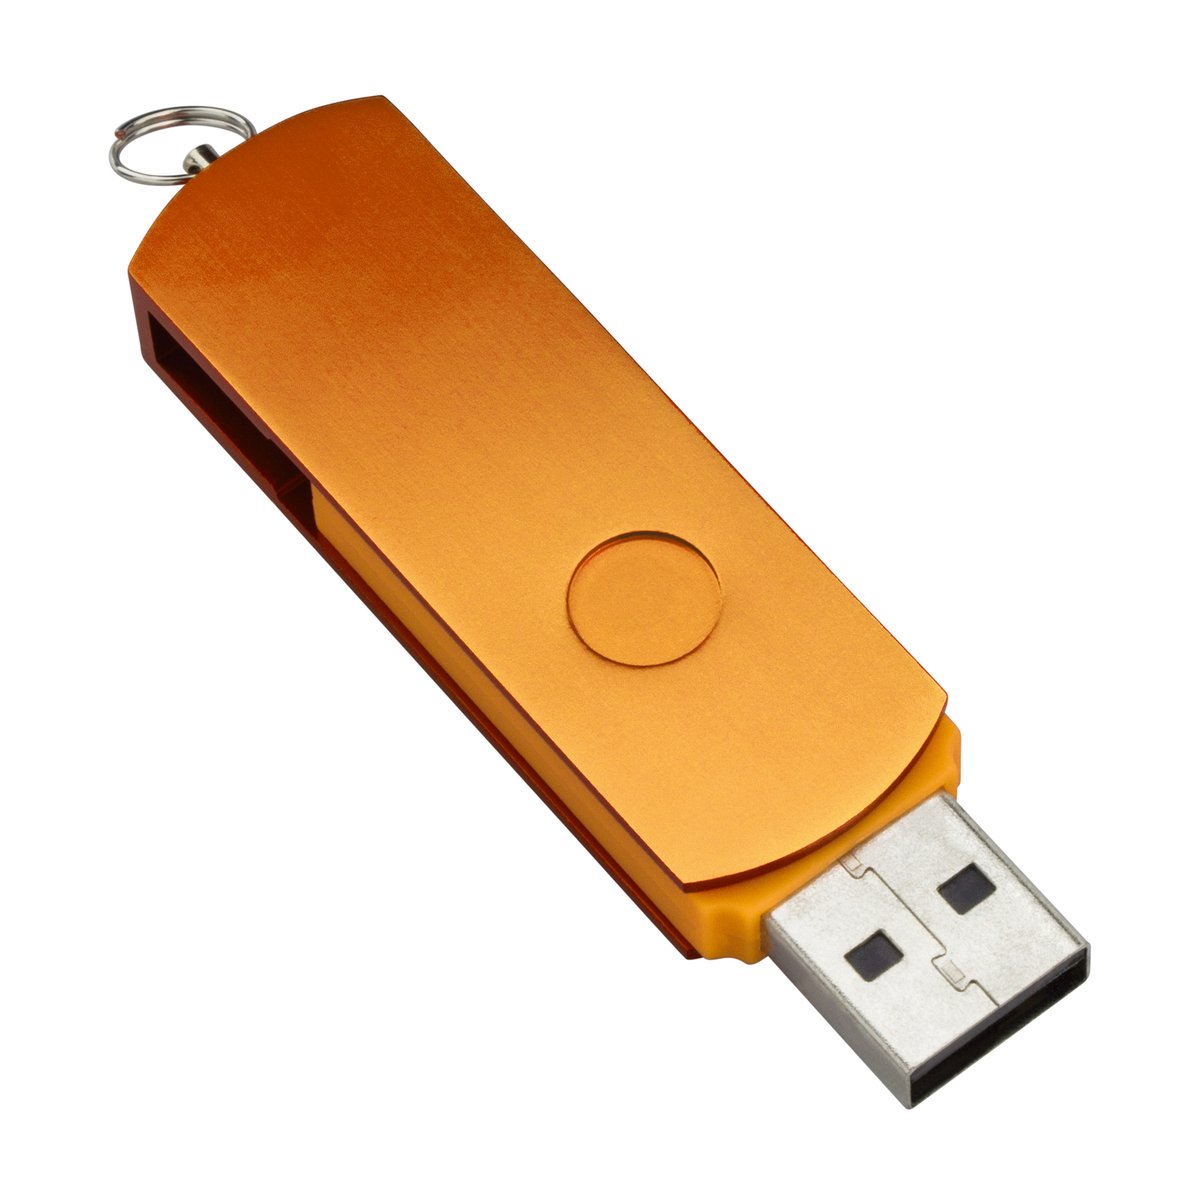 USB Flash Drive REEVES-ARAUCA orange 4GB